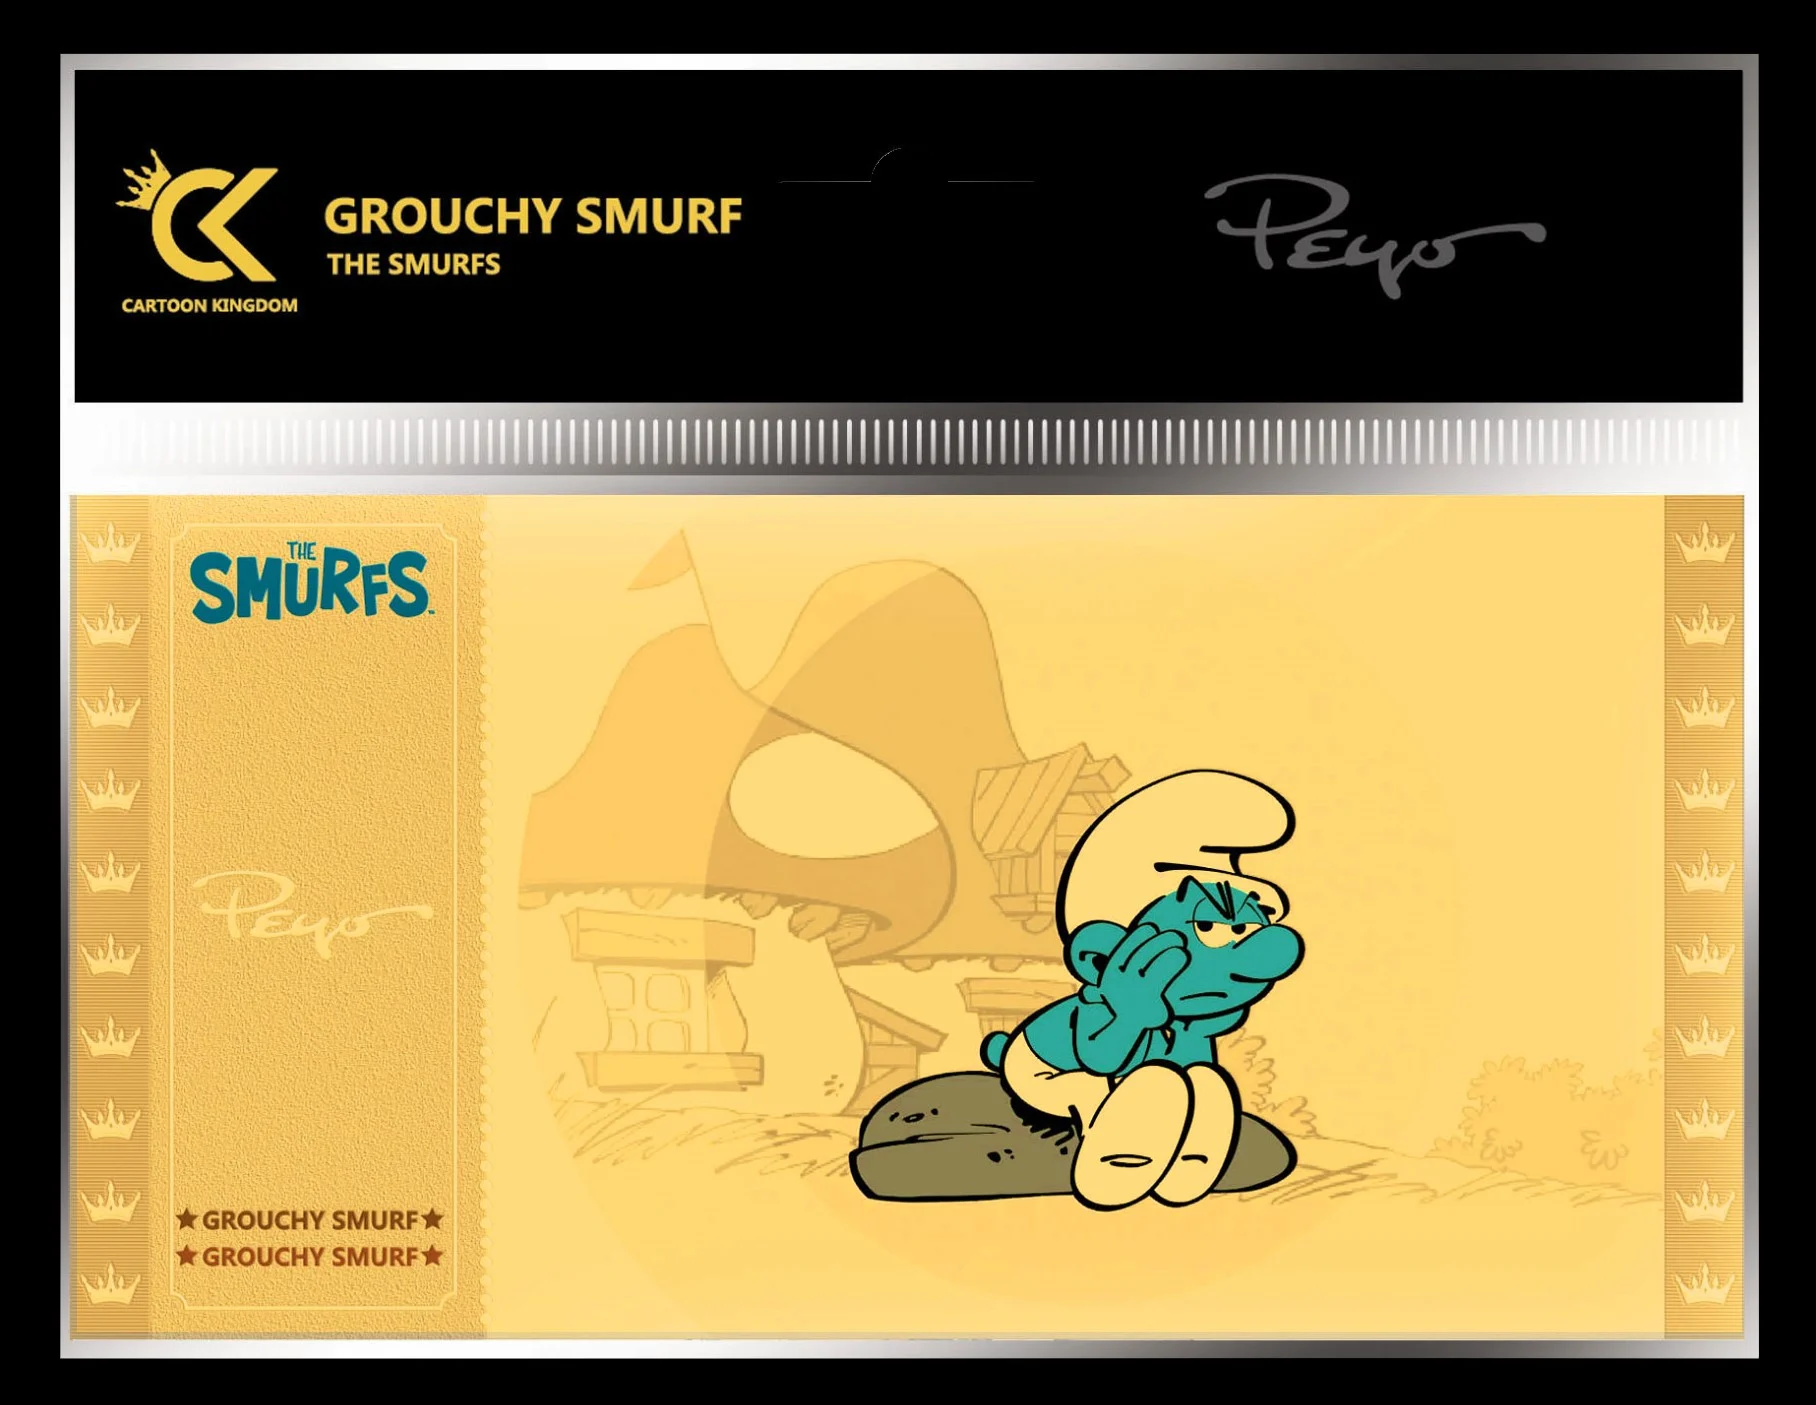 THE SMURFS - Grouchy Smurf (Moppersmurf) - Golden Ticket CK-TS05